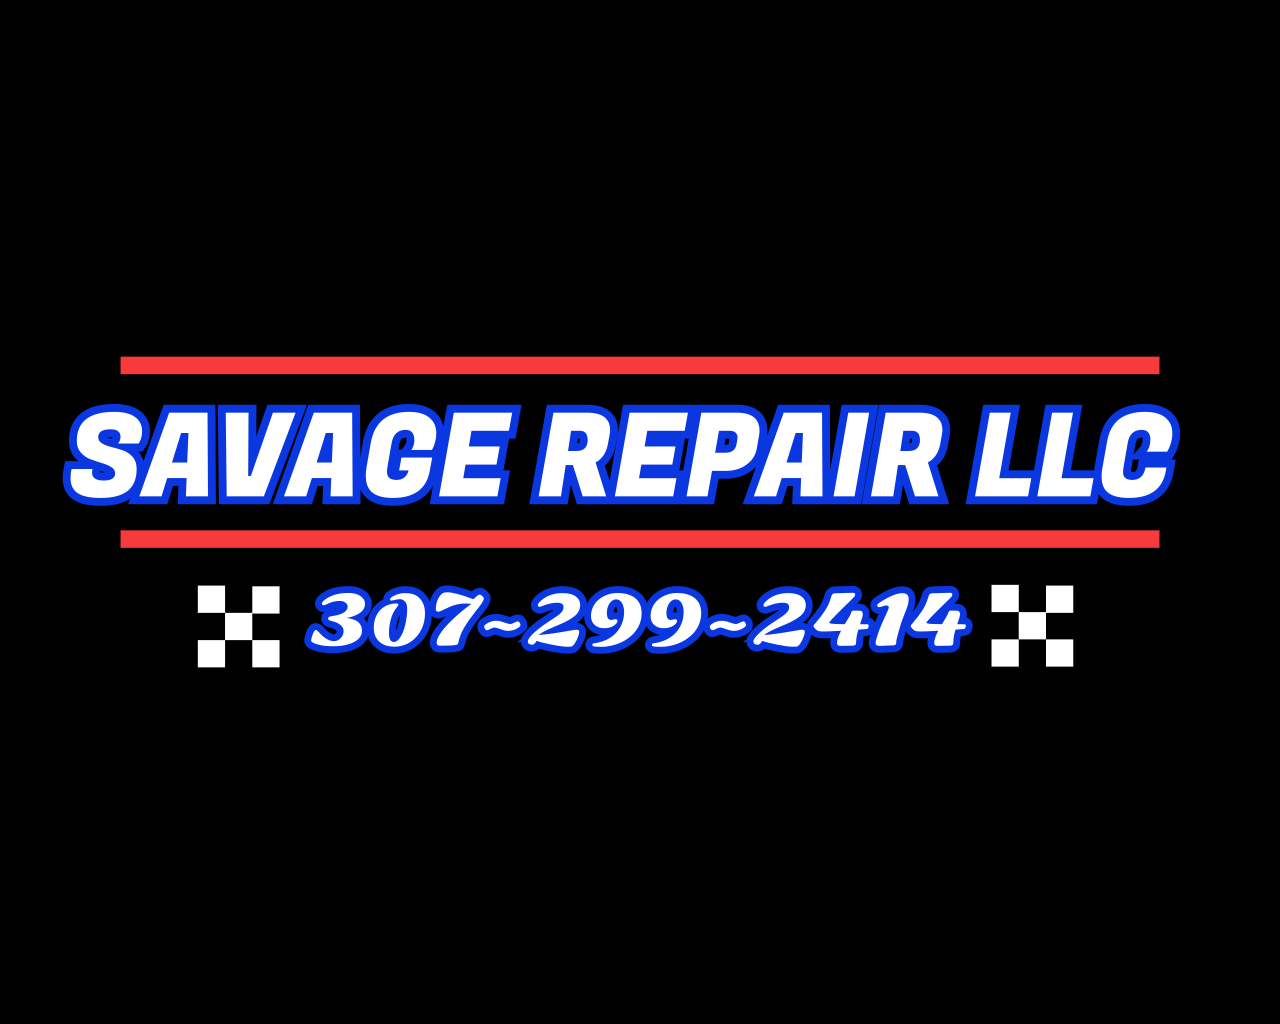 Savage Repair, LLC Slide Image